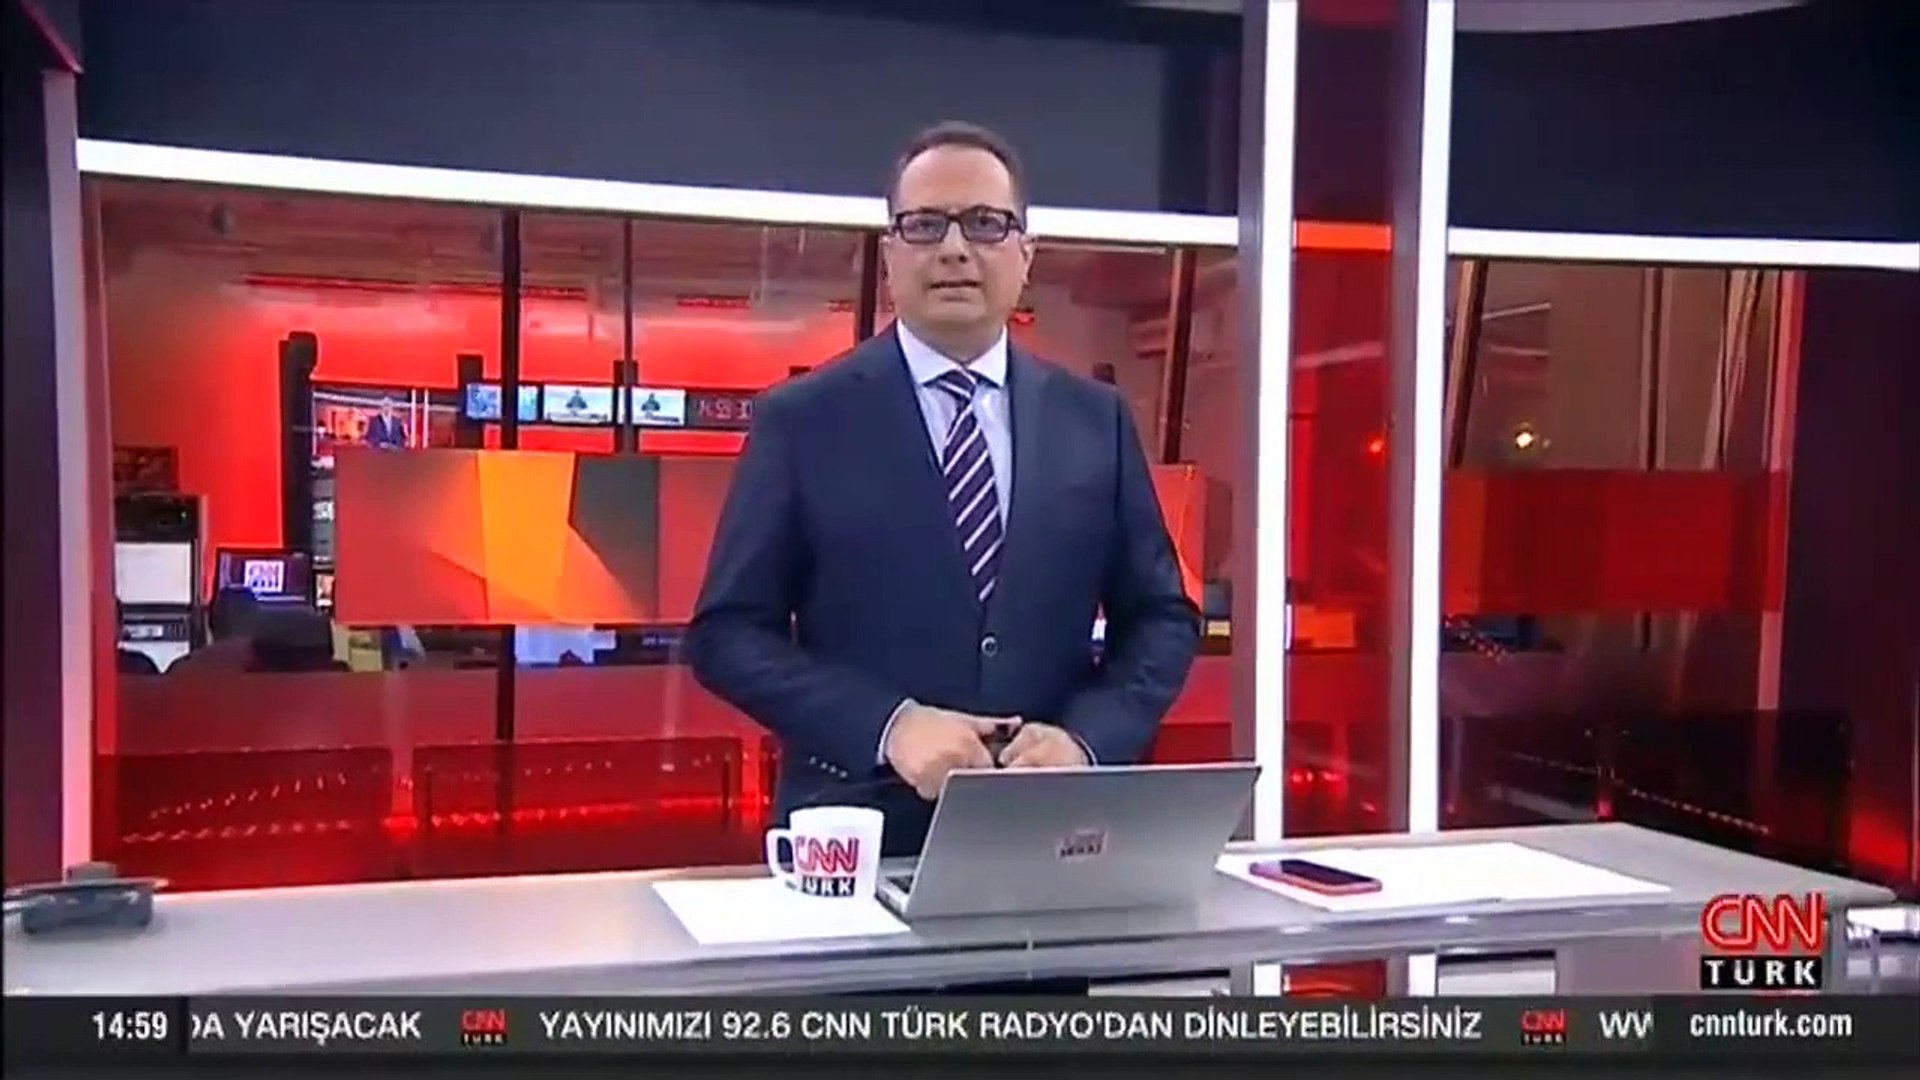 Günün son dakika önemli gelişmeleri! (CNN TÜRK 16.30 bülteni) - Dailymotion  Video